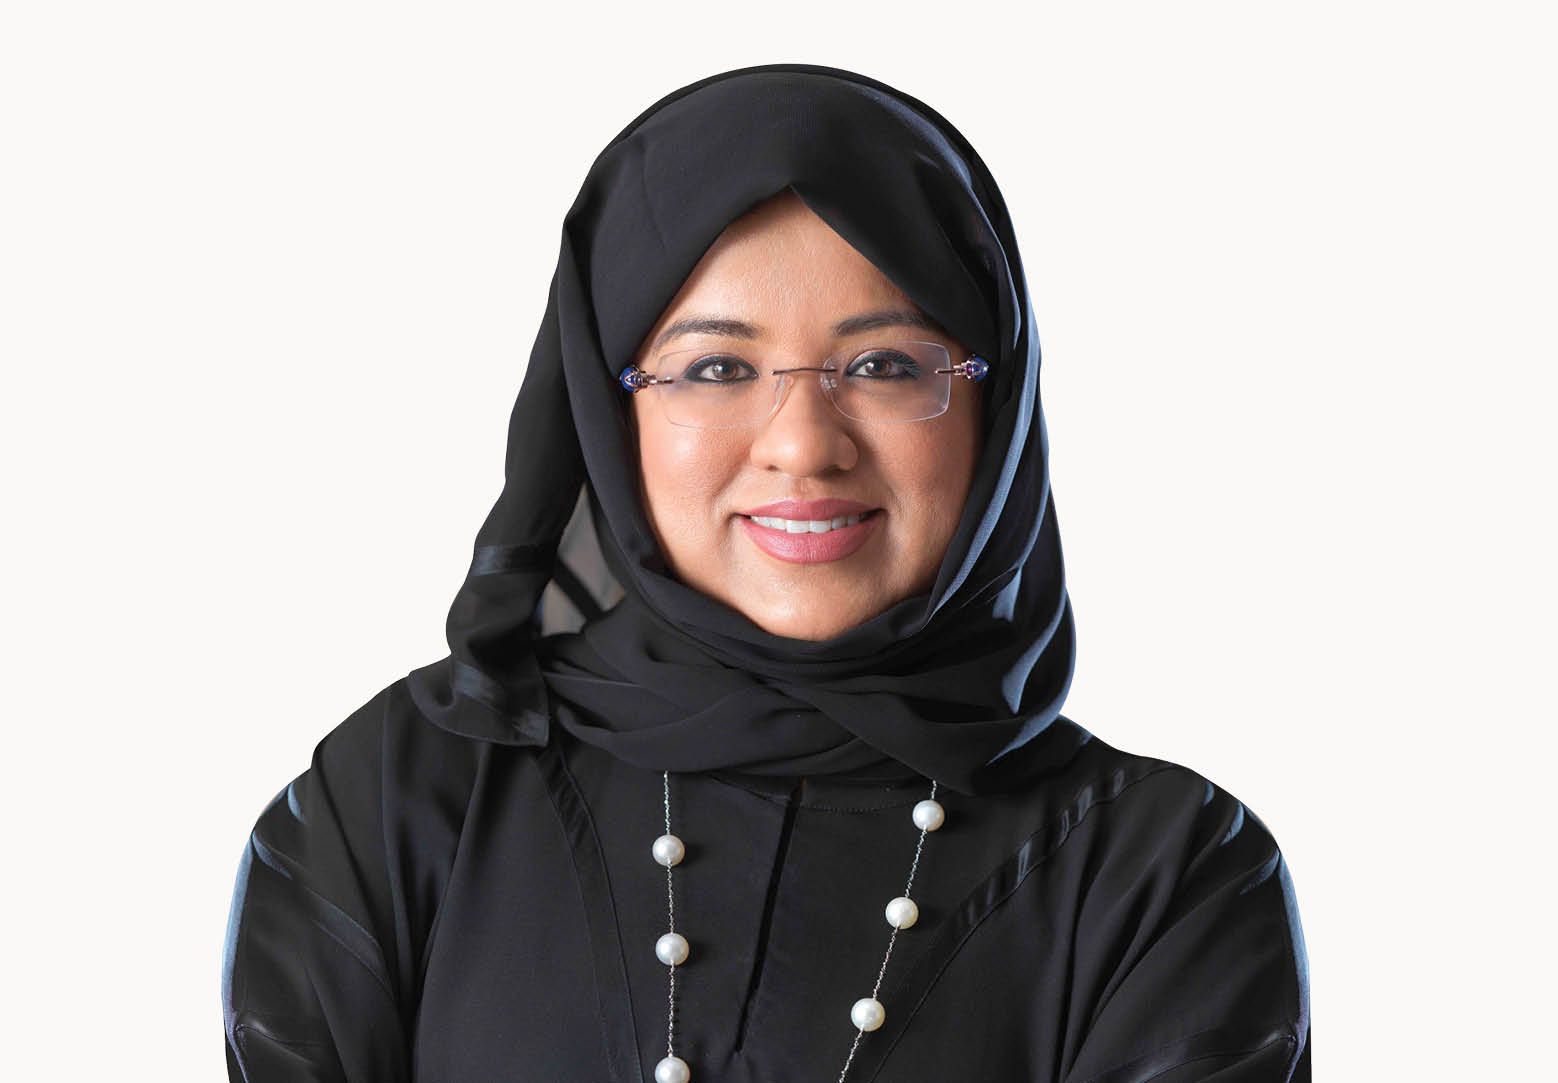 Laila Mohammed Suhail